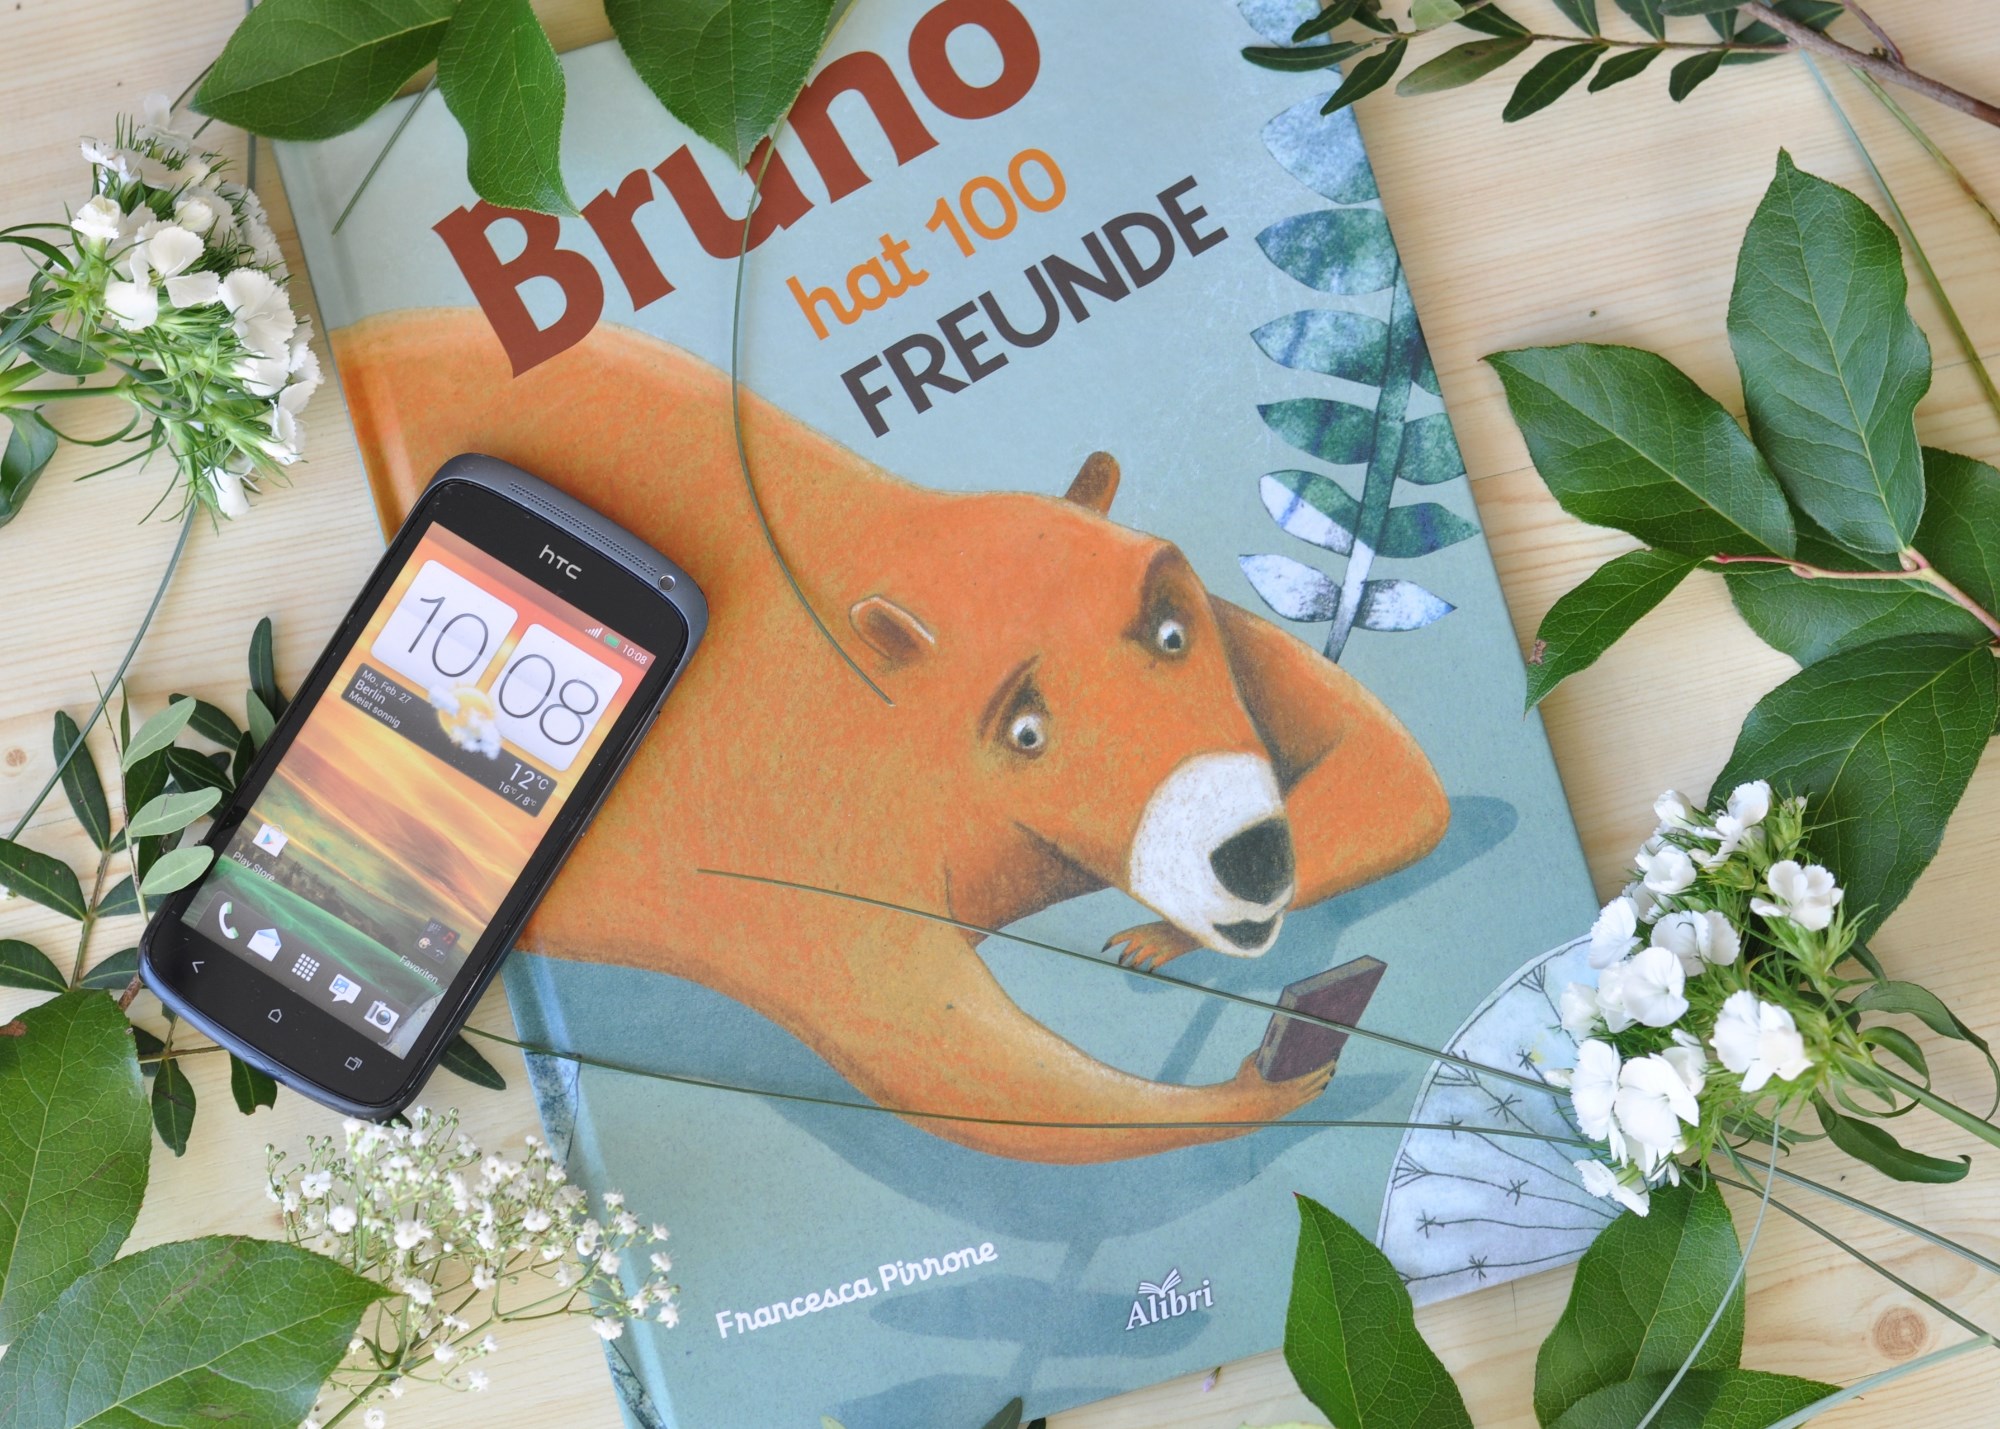 Bruno hat 100 Freunde - Medienkompetenz & Freundschaft für Kinder ab 5 Jahren #bilderbuch #kinderbuch #medienkompetenz #medien #handy #kinder